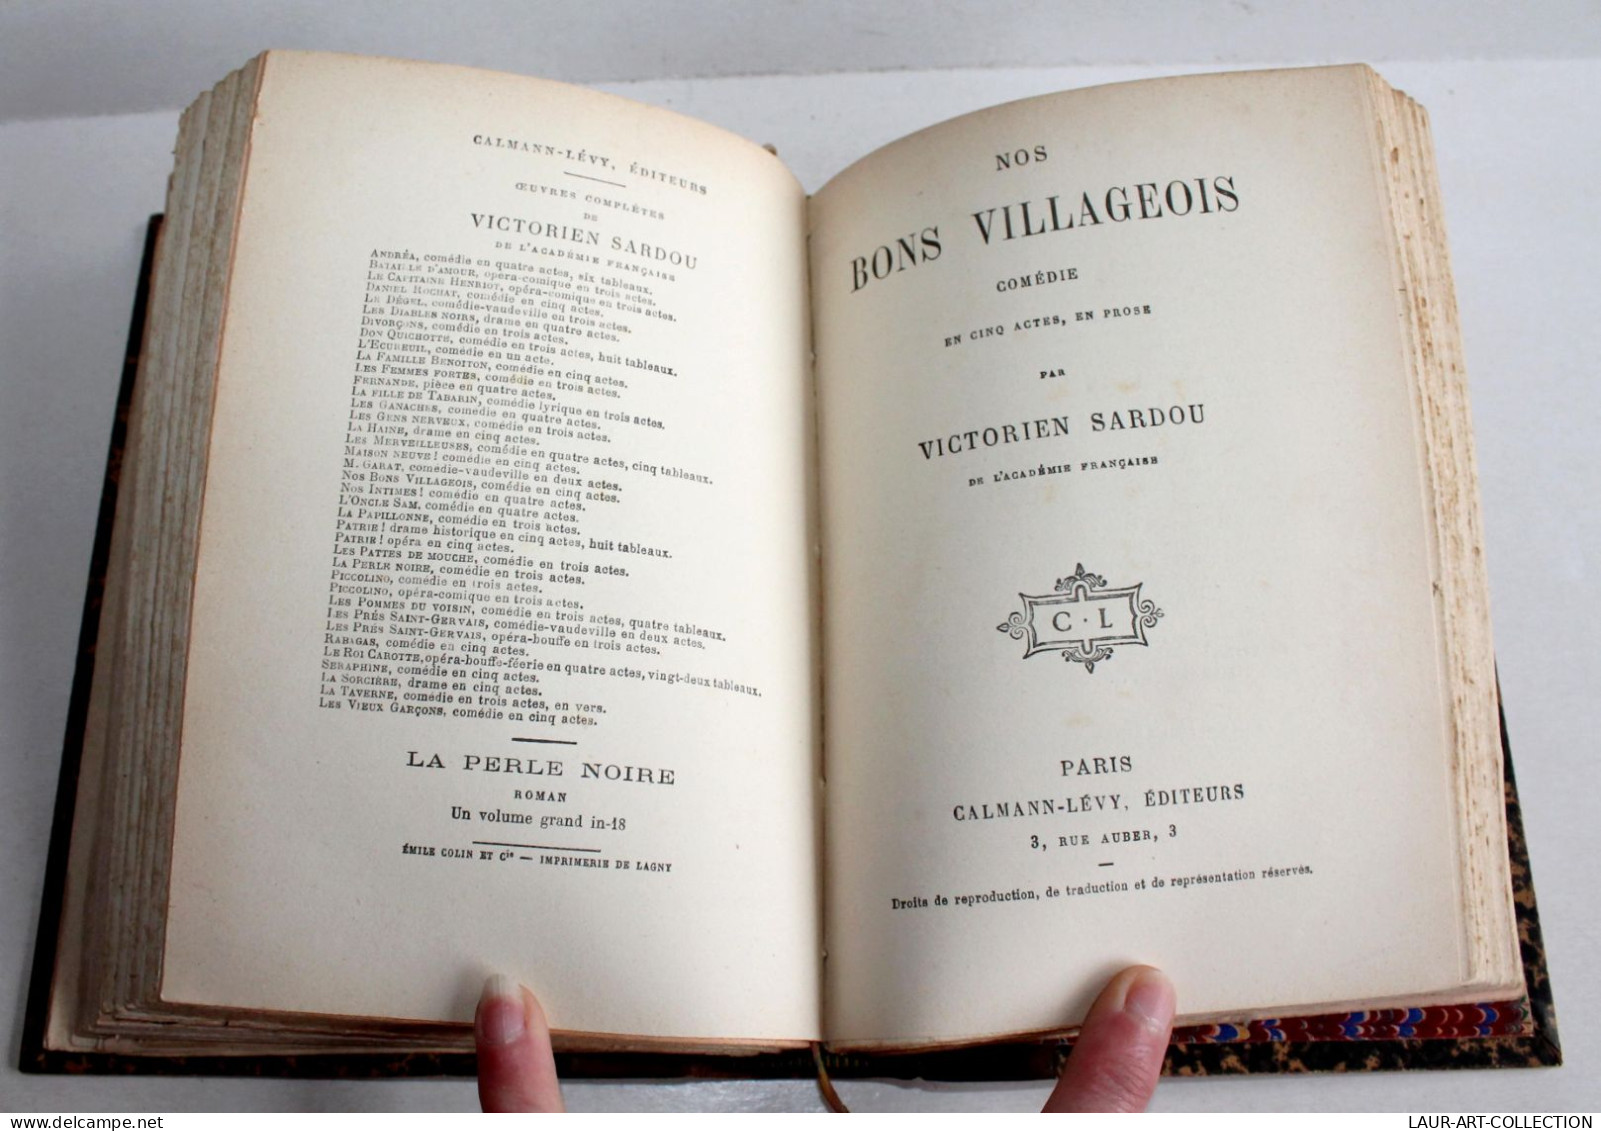 RARE! VICTORIEN SARDOU De CLARETIE + NOS BONS VILLAGEOIS COMEDIE 1883 THEATRE / ANCIEN LIVRE XIXe SIECLE (2603.42) - Auteurs Français